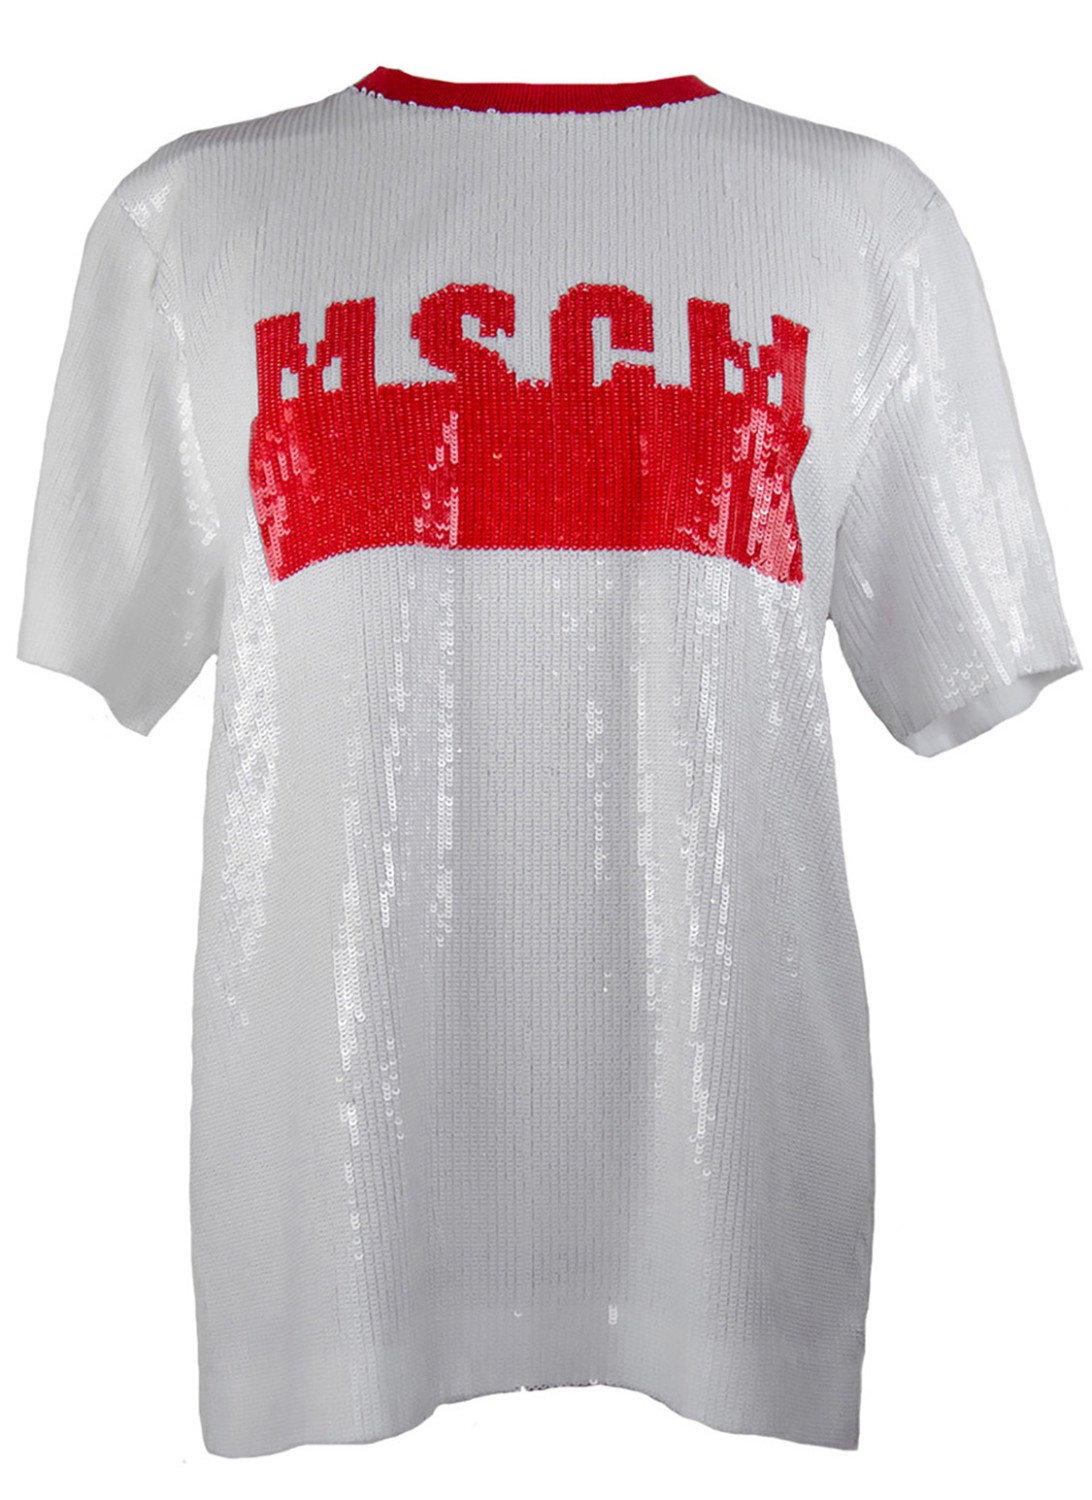 shop MSGM  T-shirts: T-shirt MSGM tutta di paillettes bianche, girocollo, manica corta, modello oversize, logo rosso, colletto rosso, sottoveste color cammello.

Composizione: 100% poliestere number 840